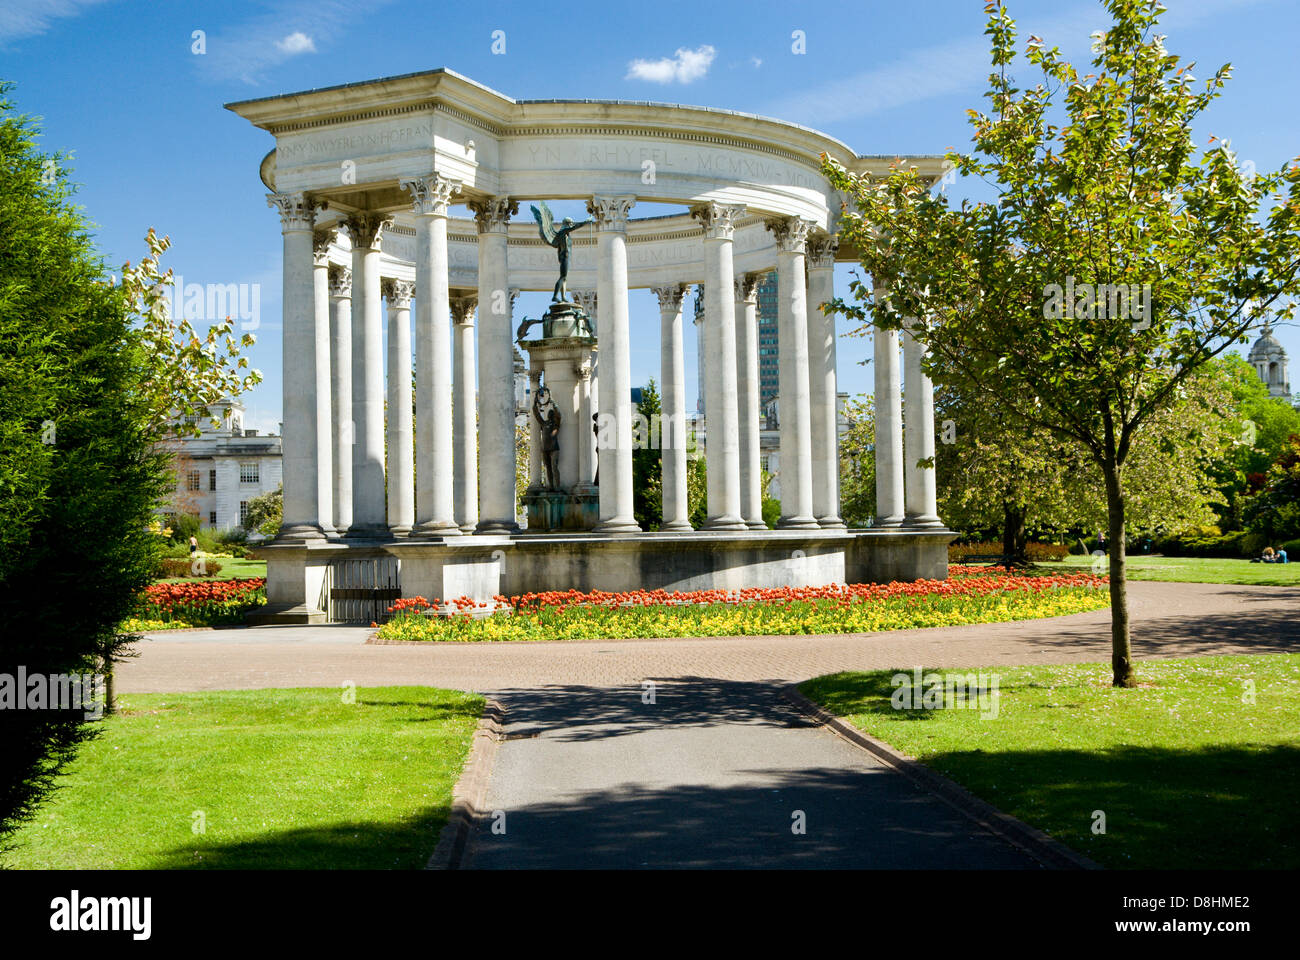 Monument commémoratif de guerre et tulipes Alexandra Gardens, Cathays Park, Cardiff, Pays de Galles. Banque D'Images